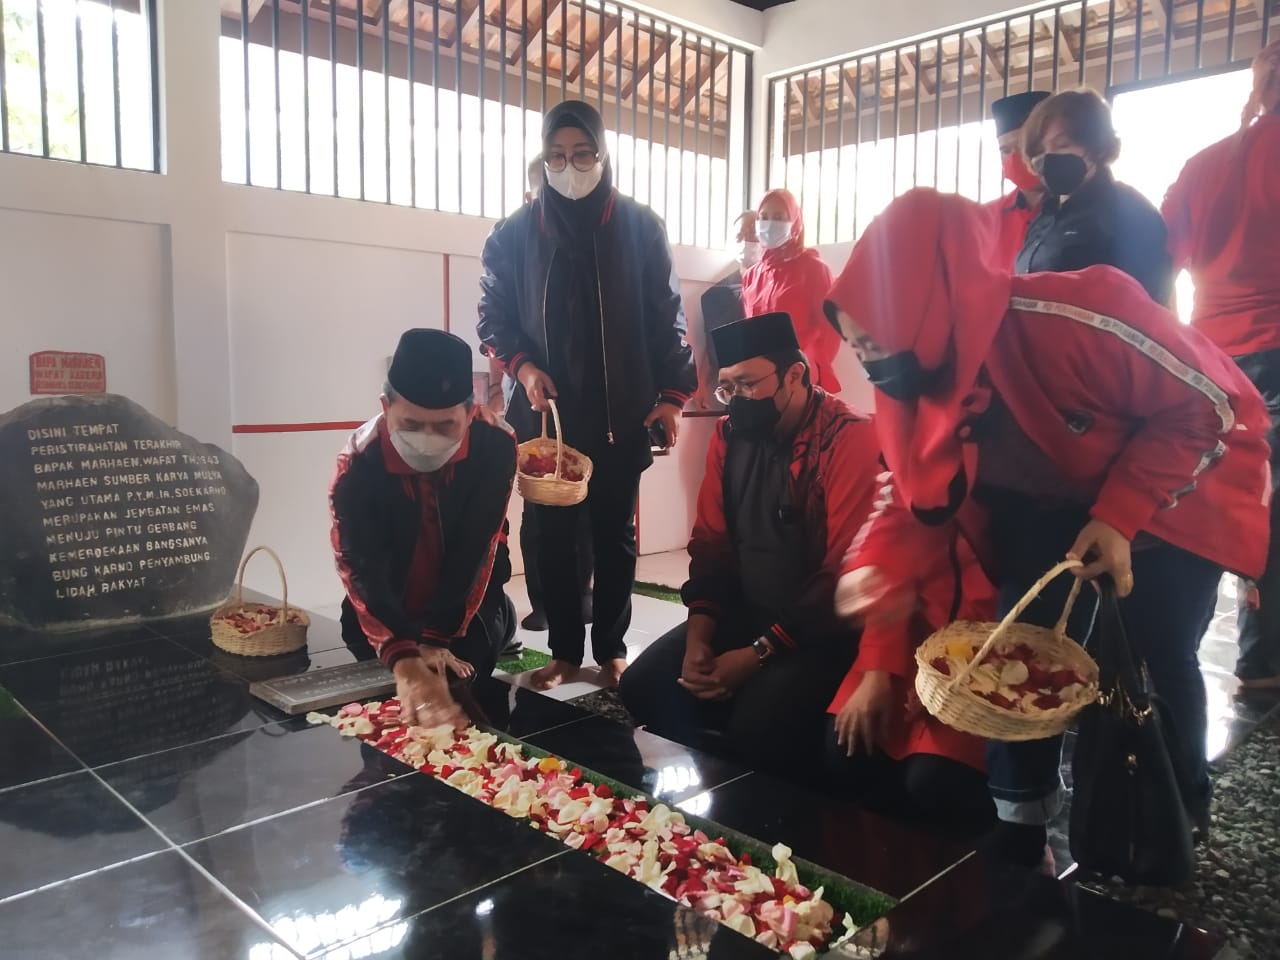 PDI Perjuangan Ziarah ke Makam Marhaen, Ono: Inspirasi Ideologi Marhaenisme Masih Dianut PDI Perjuangan